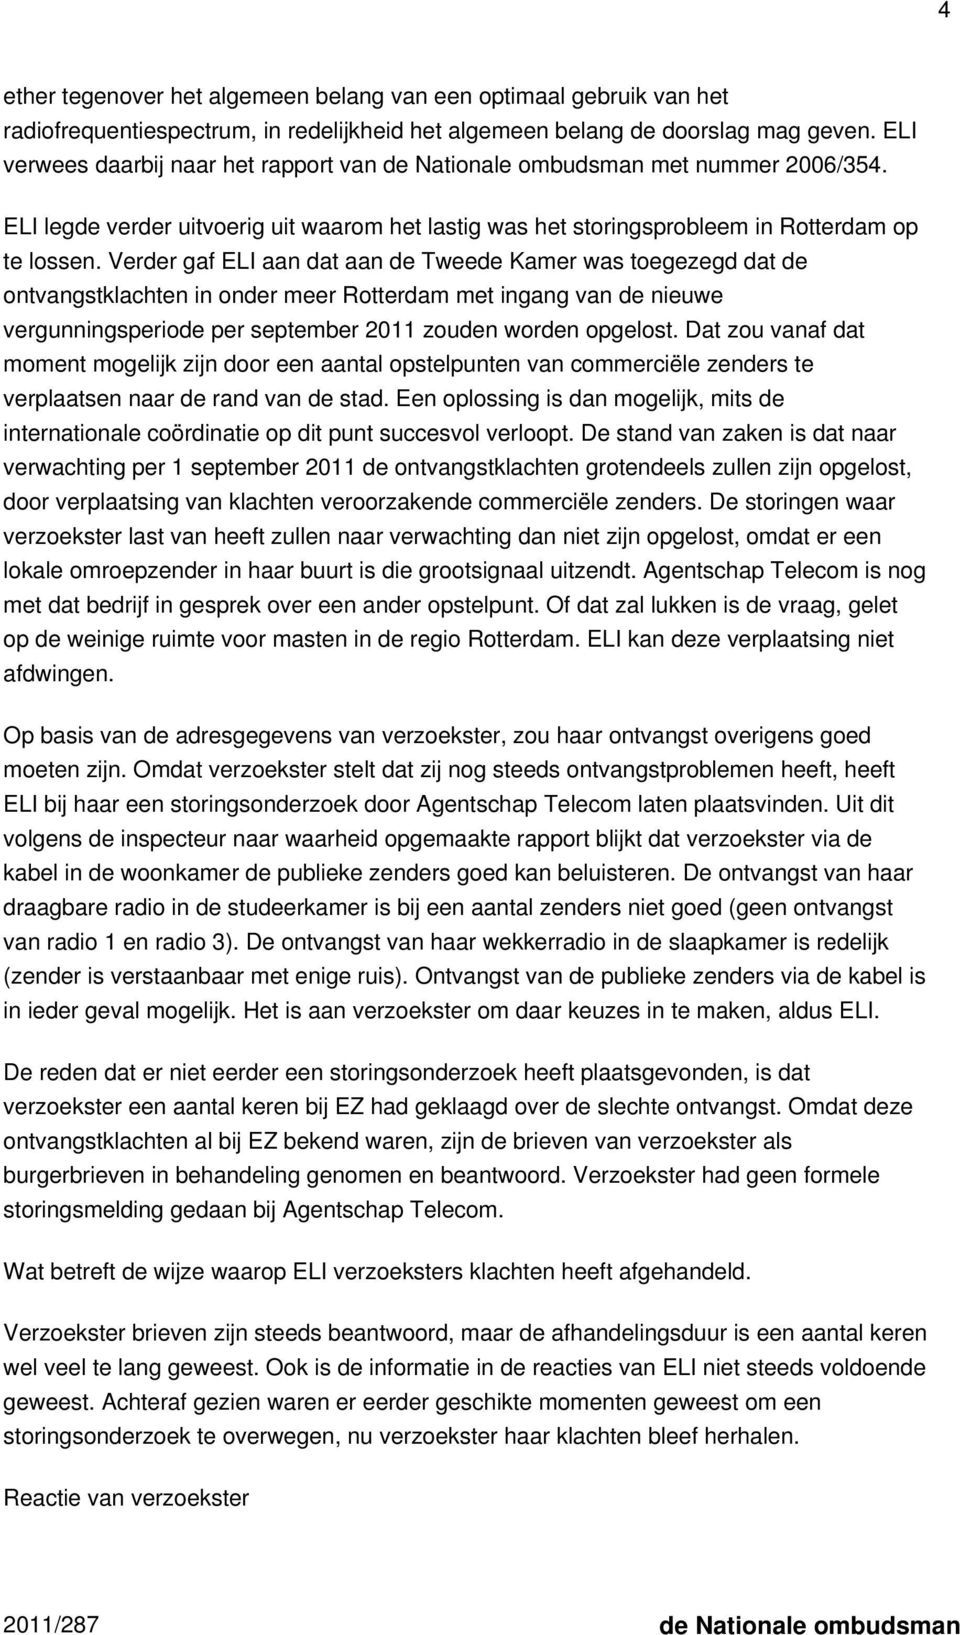 Verder gaf ELI aan dat aan de Tweede Kamer was toegezegd dat de ontvangstklachten in onder meer Rotterdam met ingang van de nieuwe vergunningsperiode per september 2011 zouden worden opgelost.